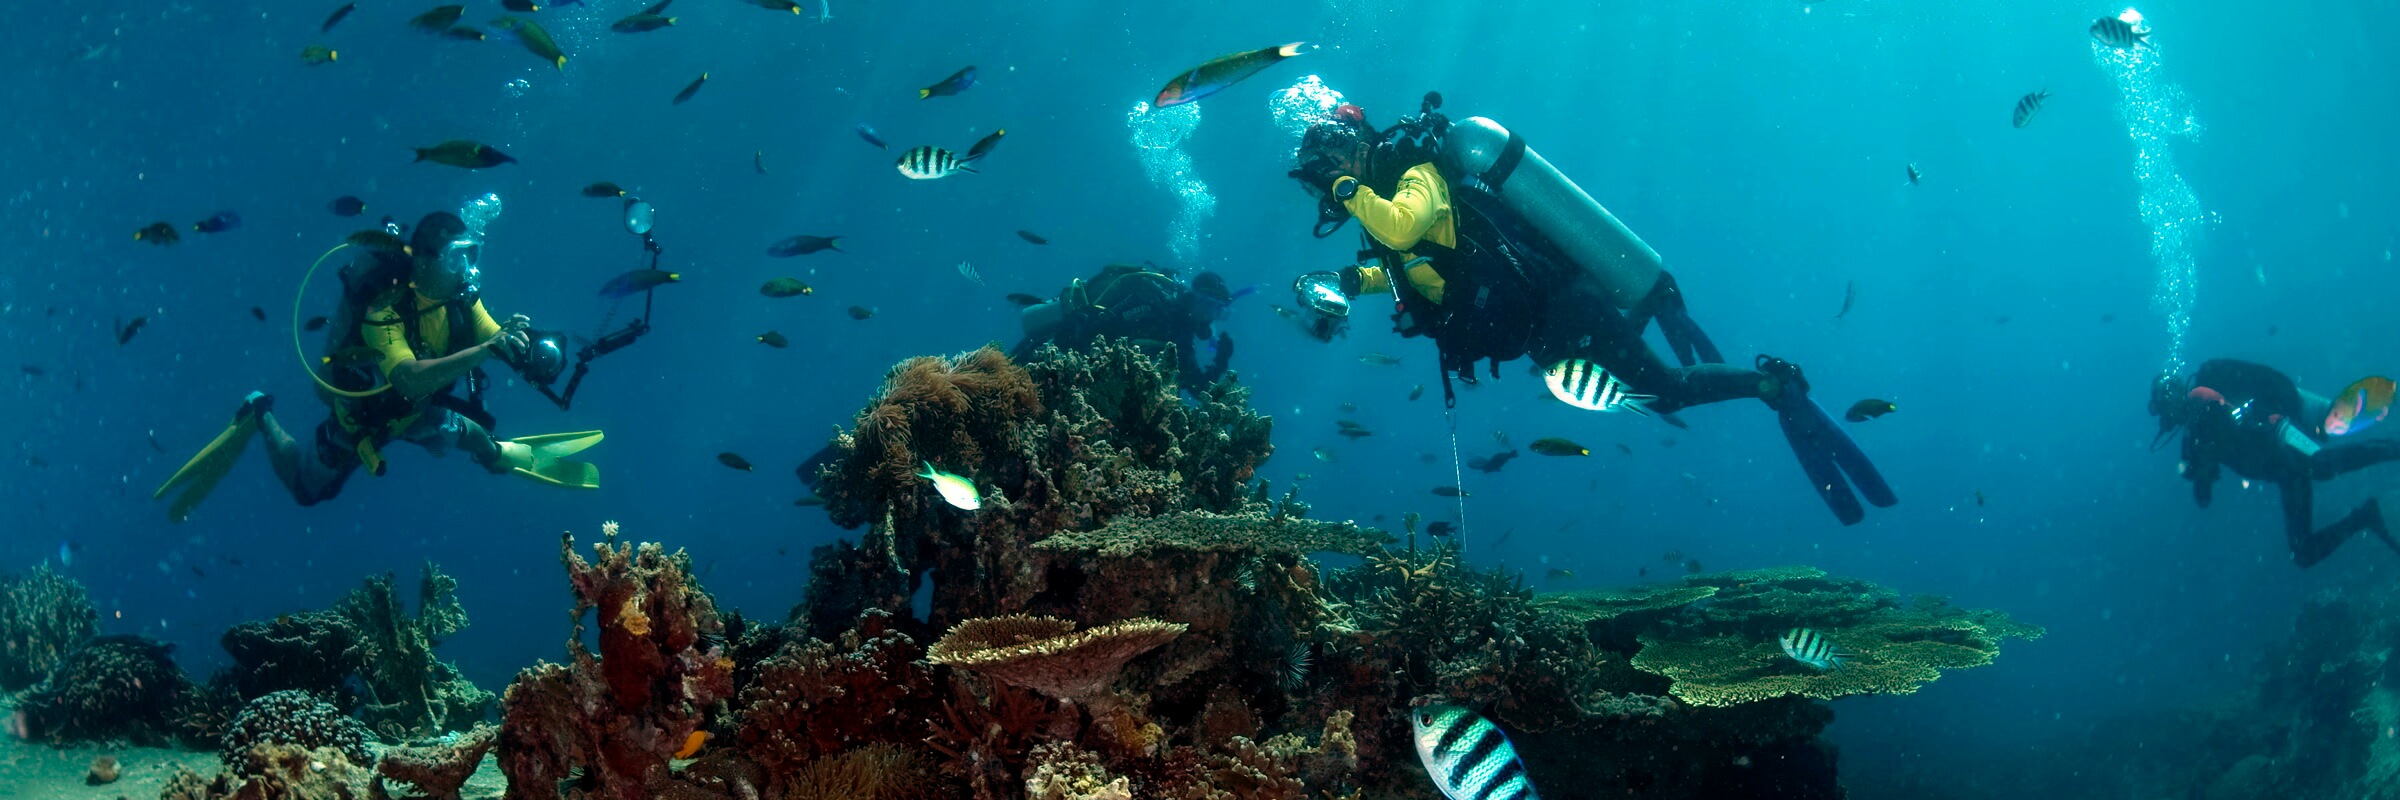 Die farbenfrohe Unterwasserwelt in den Gewässern rund um Tioman begeistert selbst erfahrene Taucher.